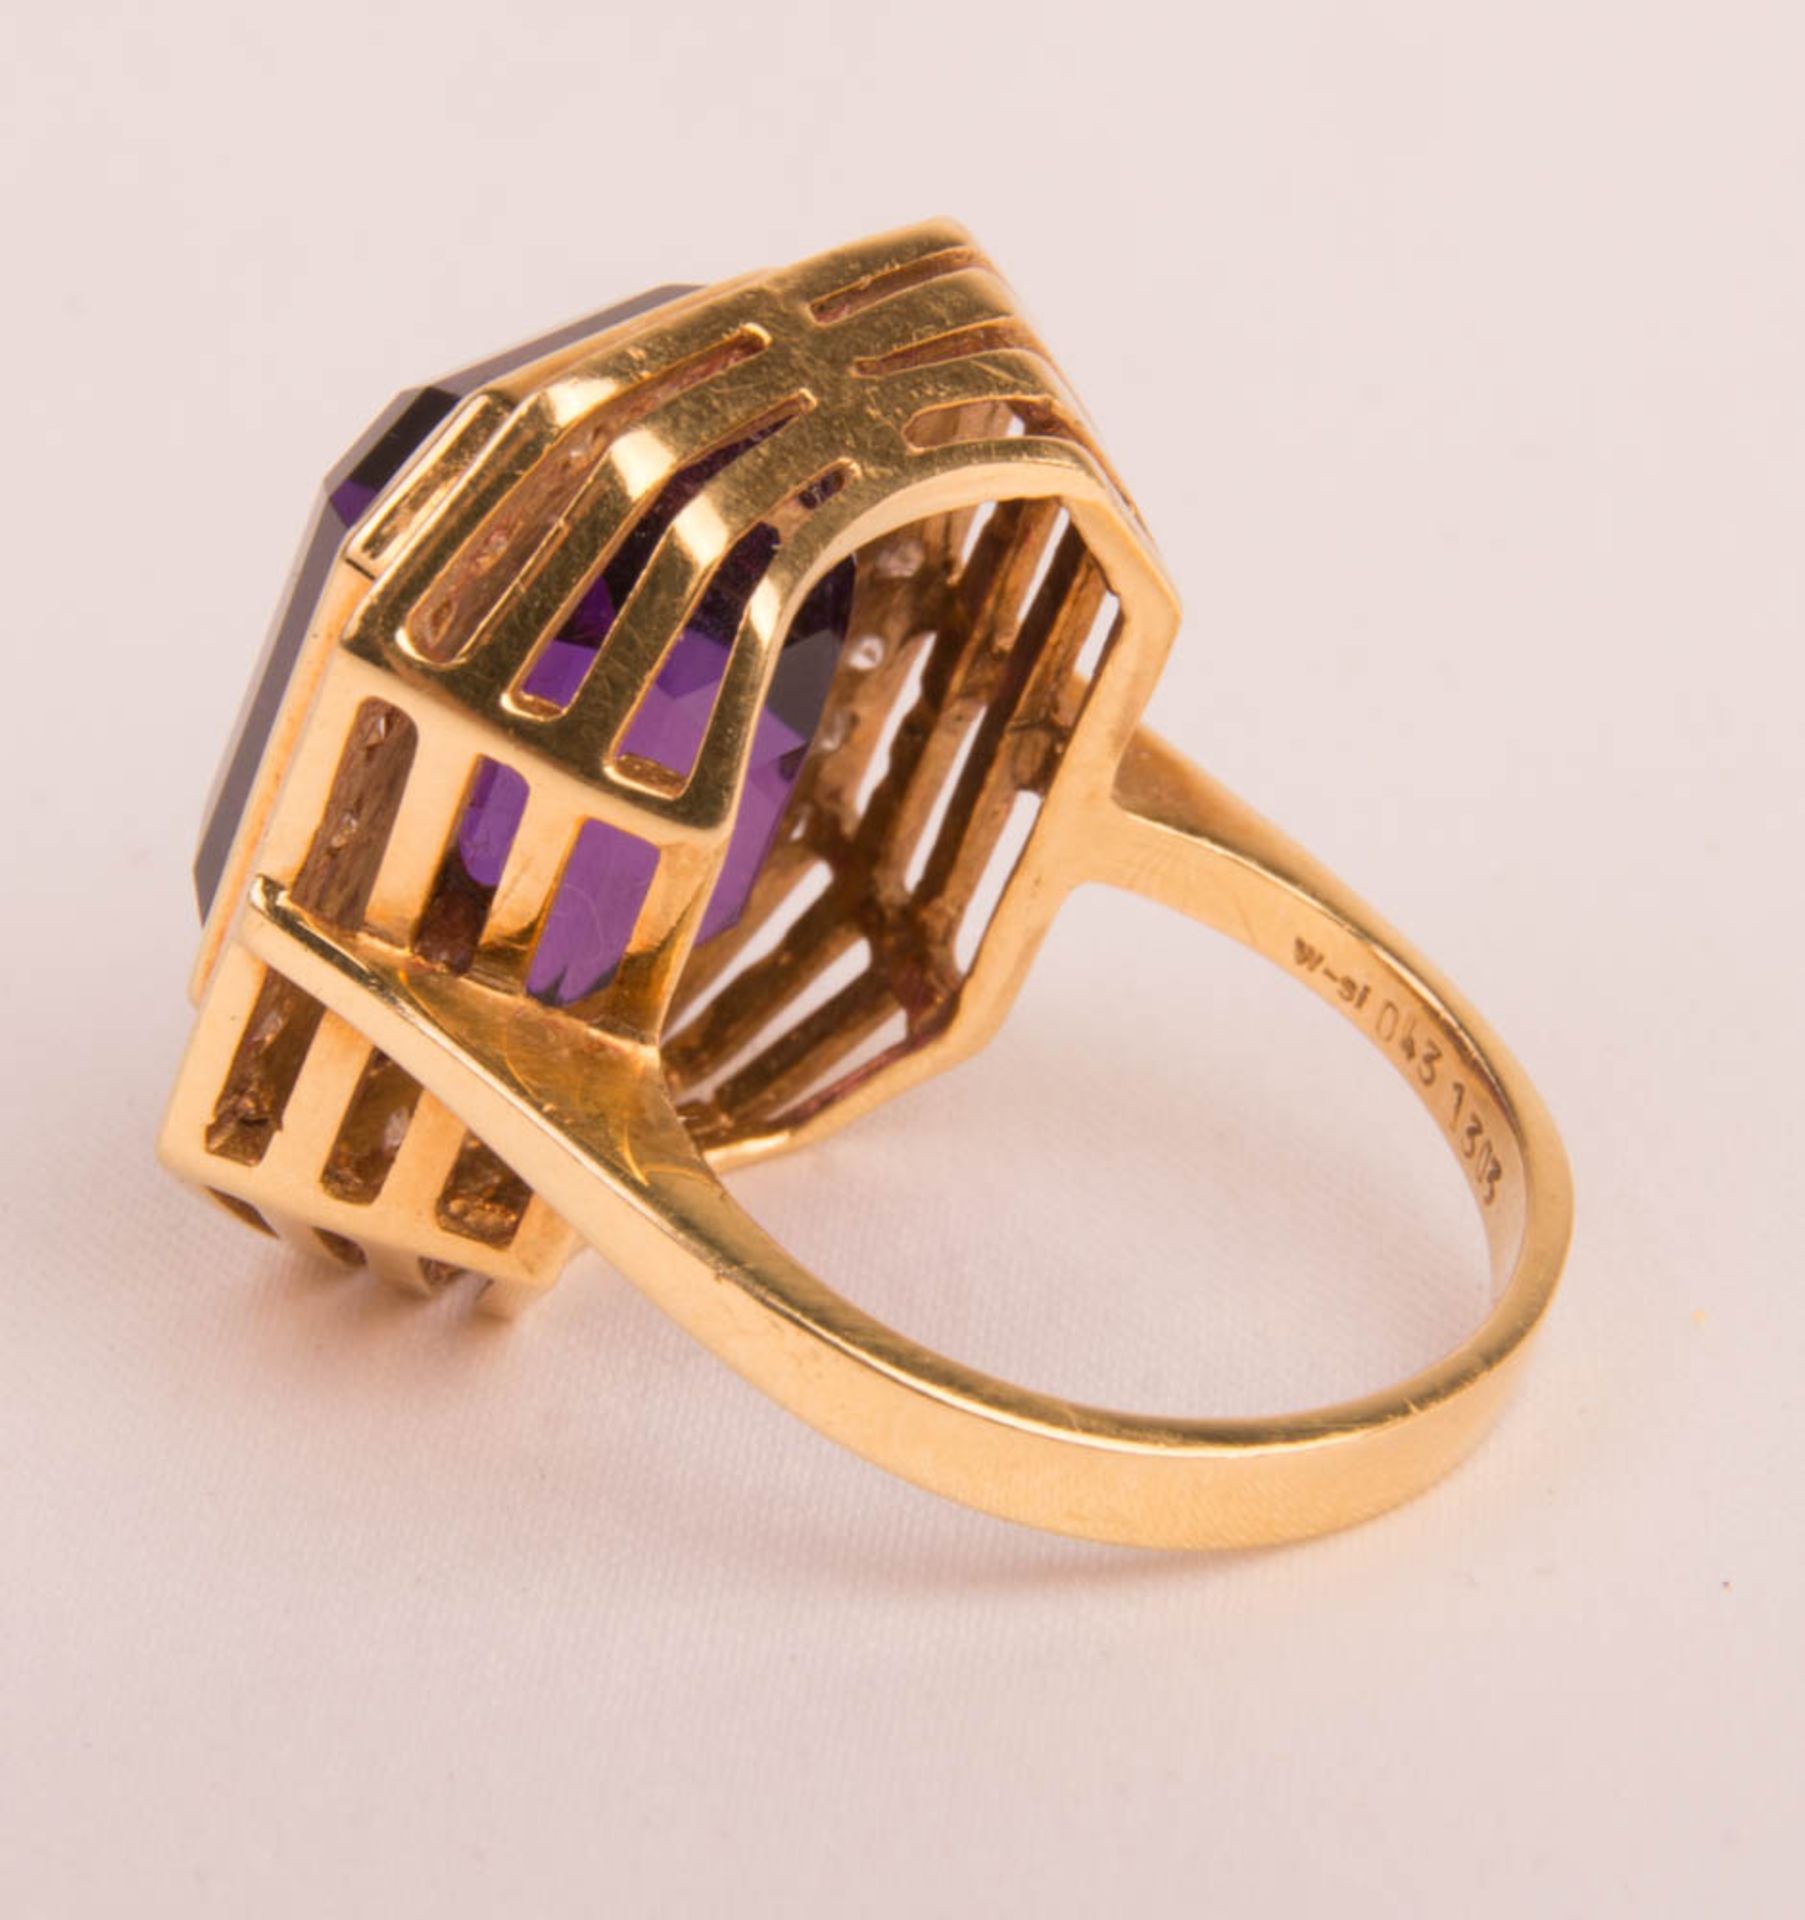 Ring mit Amethyst und Brillanten, 750er Gelbgold. - Bild 3 aus 6